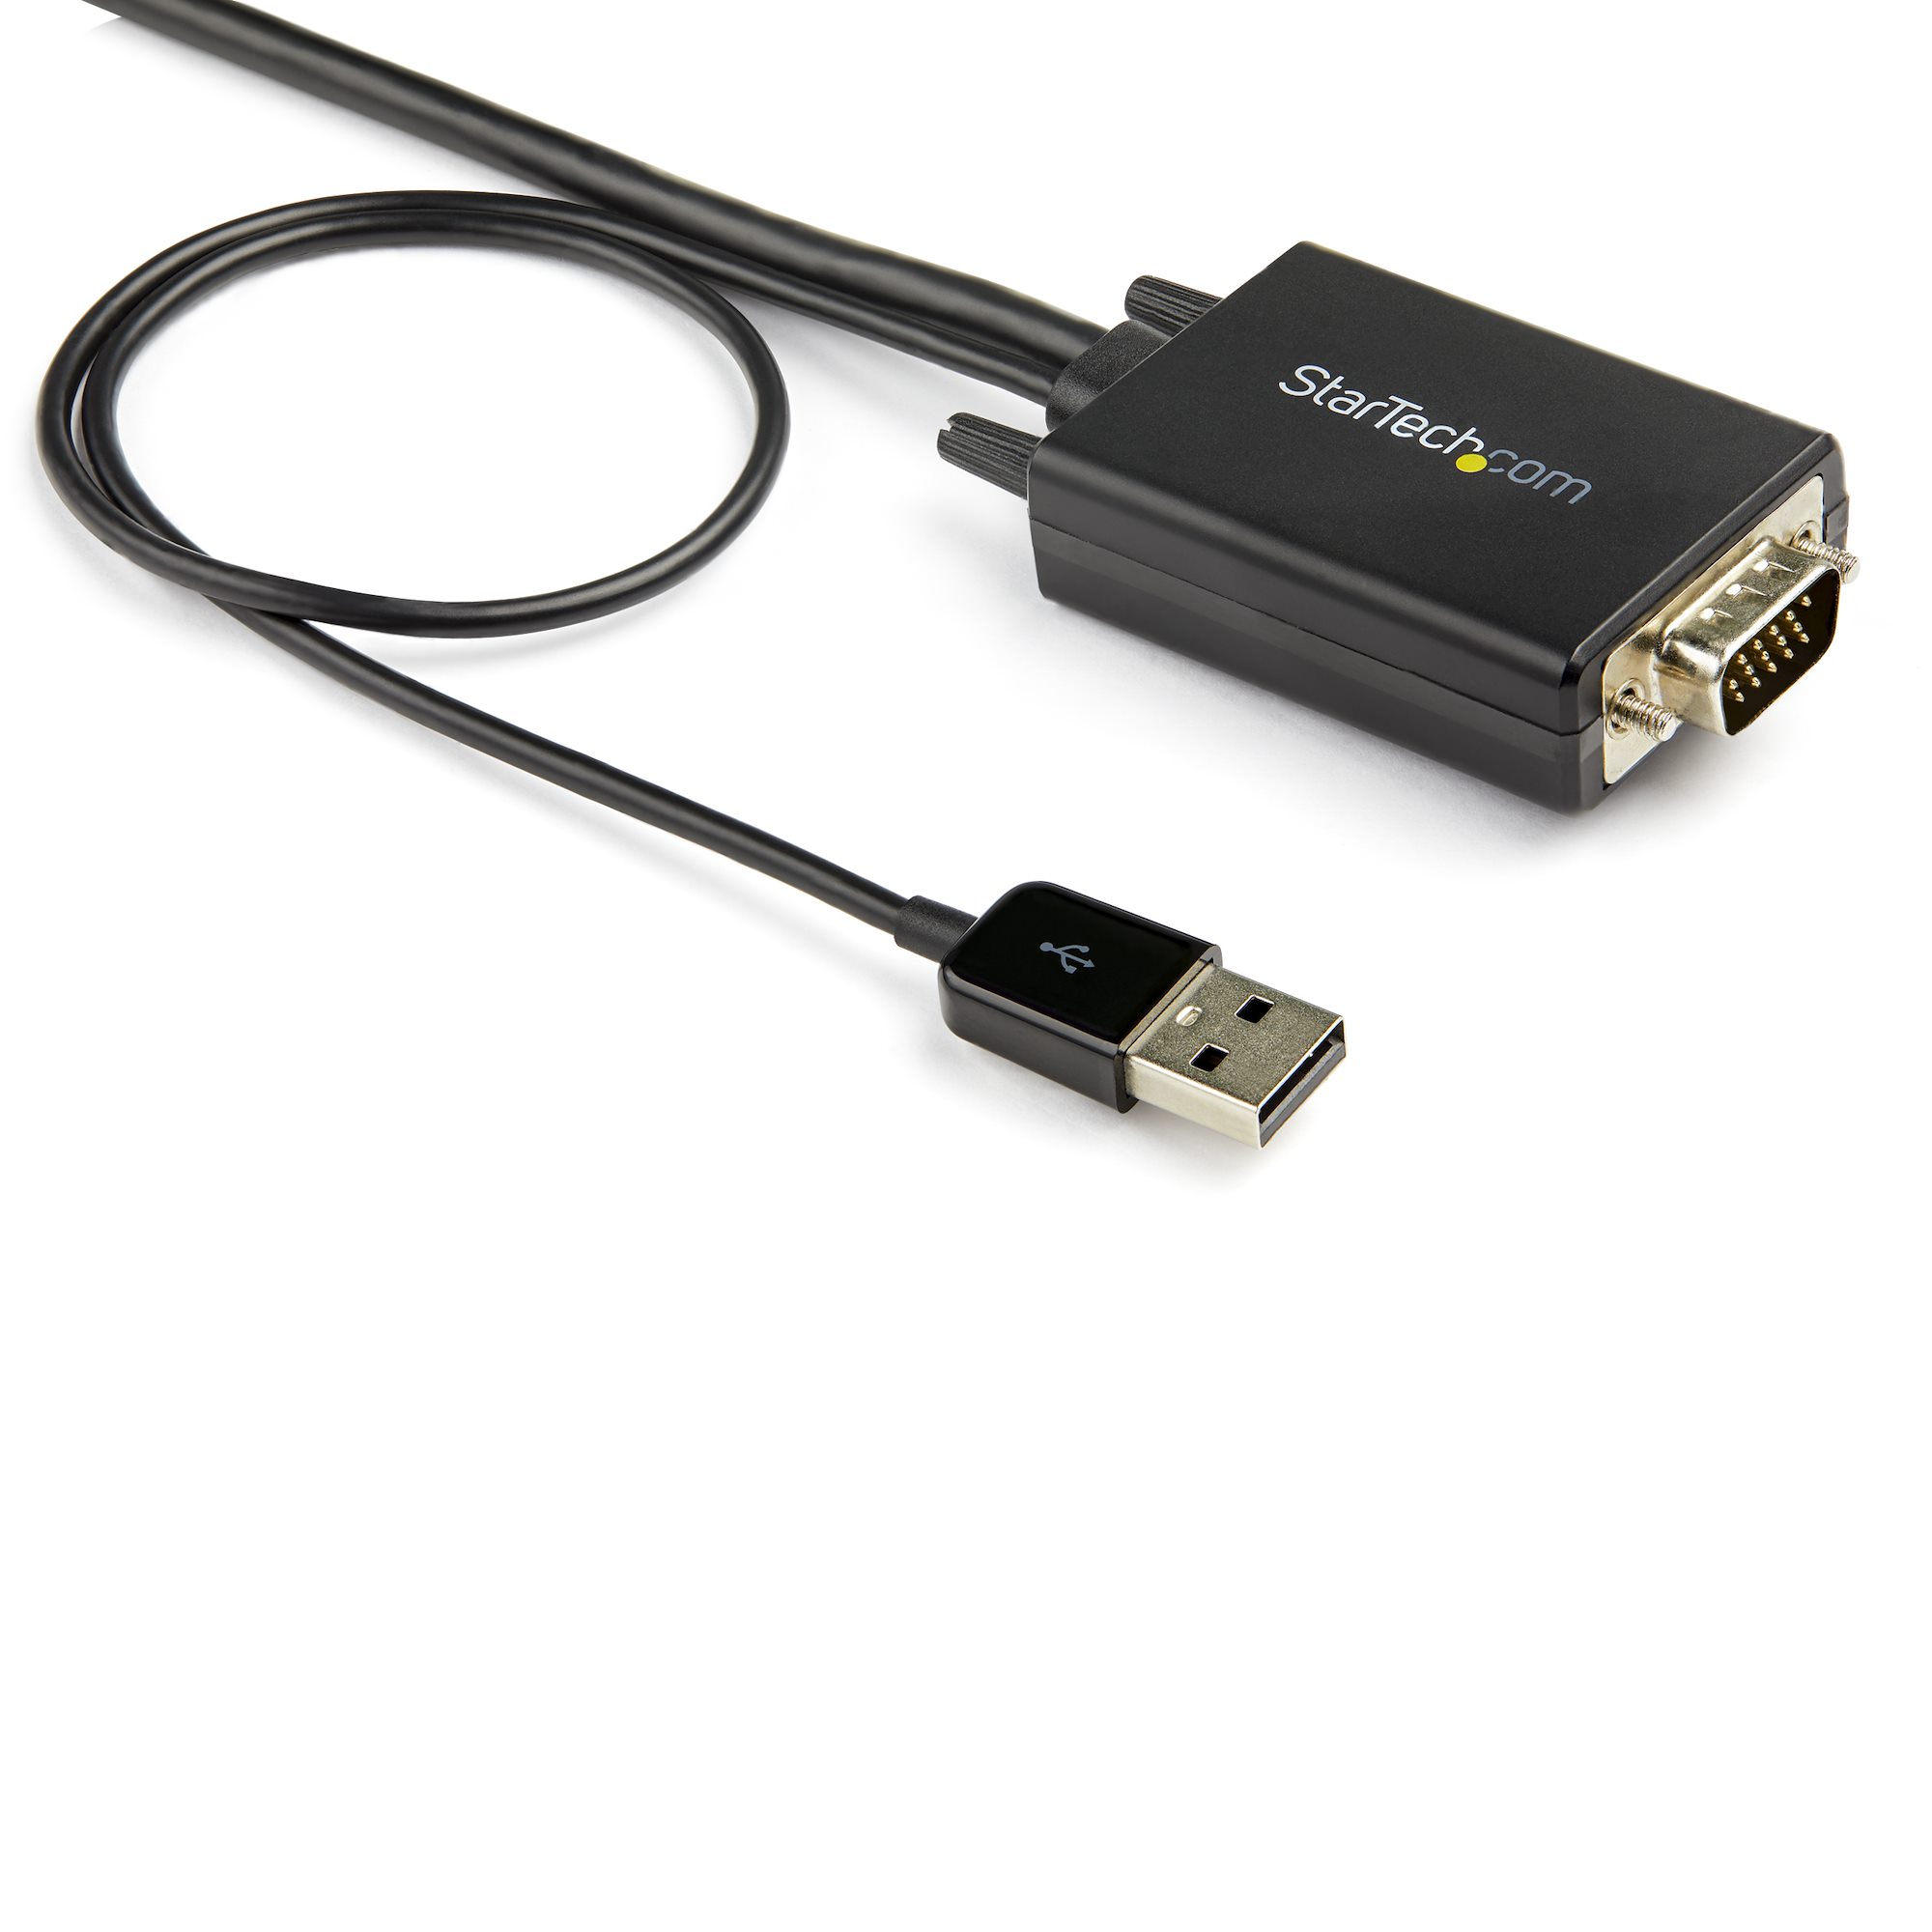 VGA(アナログRGB) - HDMIアダプタケーブル 3m 1920x1080 - ビデオ